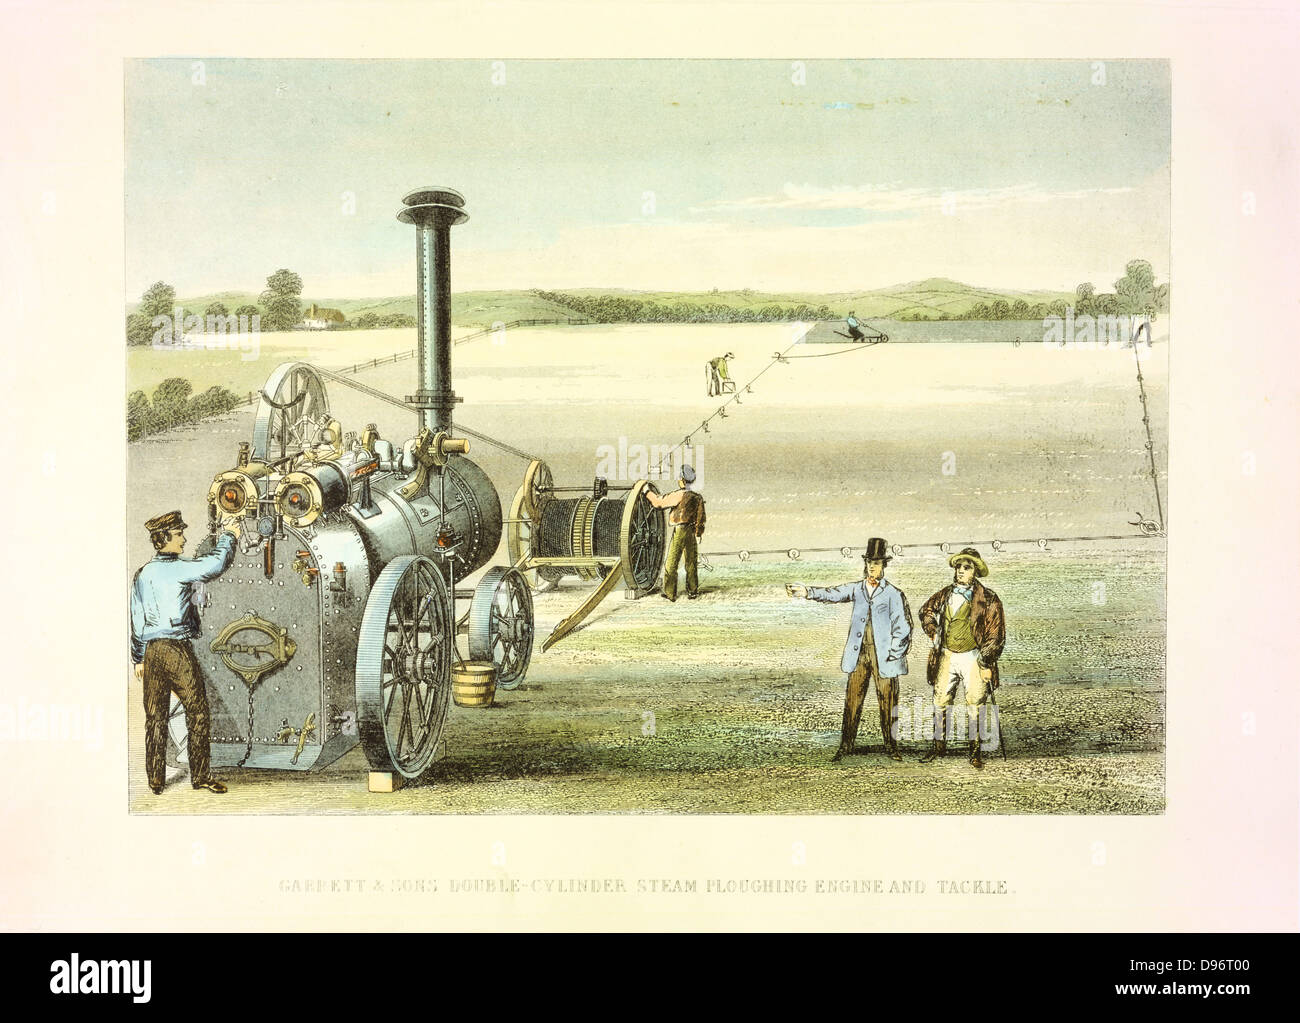 Cyrus McCormick's ernten Maschine von 1831 (patentiert 1834). Bei Crystal Palace von 1851 ausgestellt. Erste weit verbreitete Ernten. Handcolorierte Kupferstich. Stockfoto